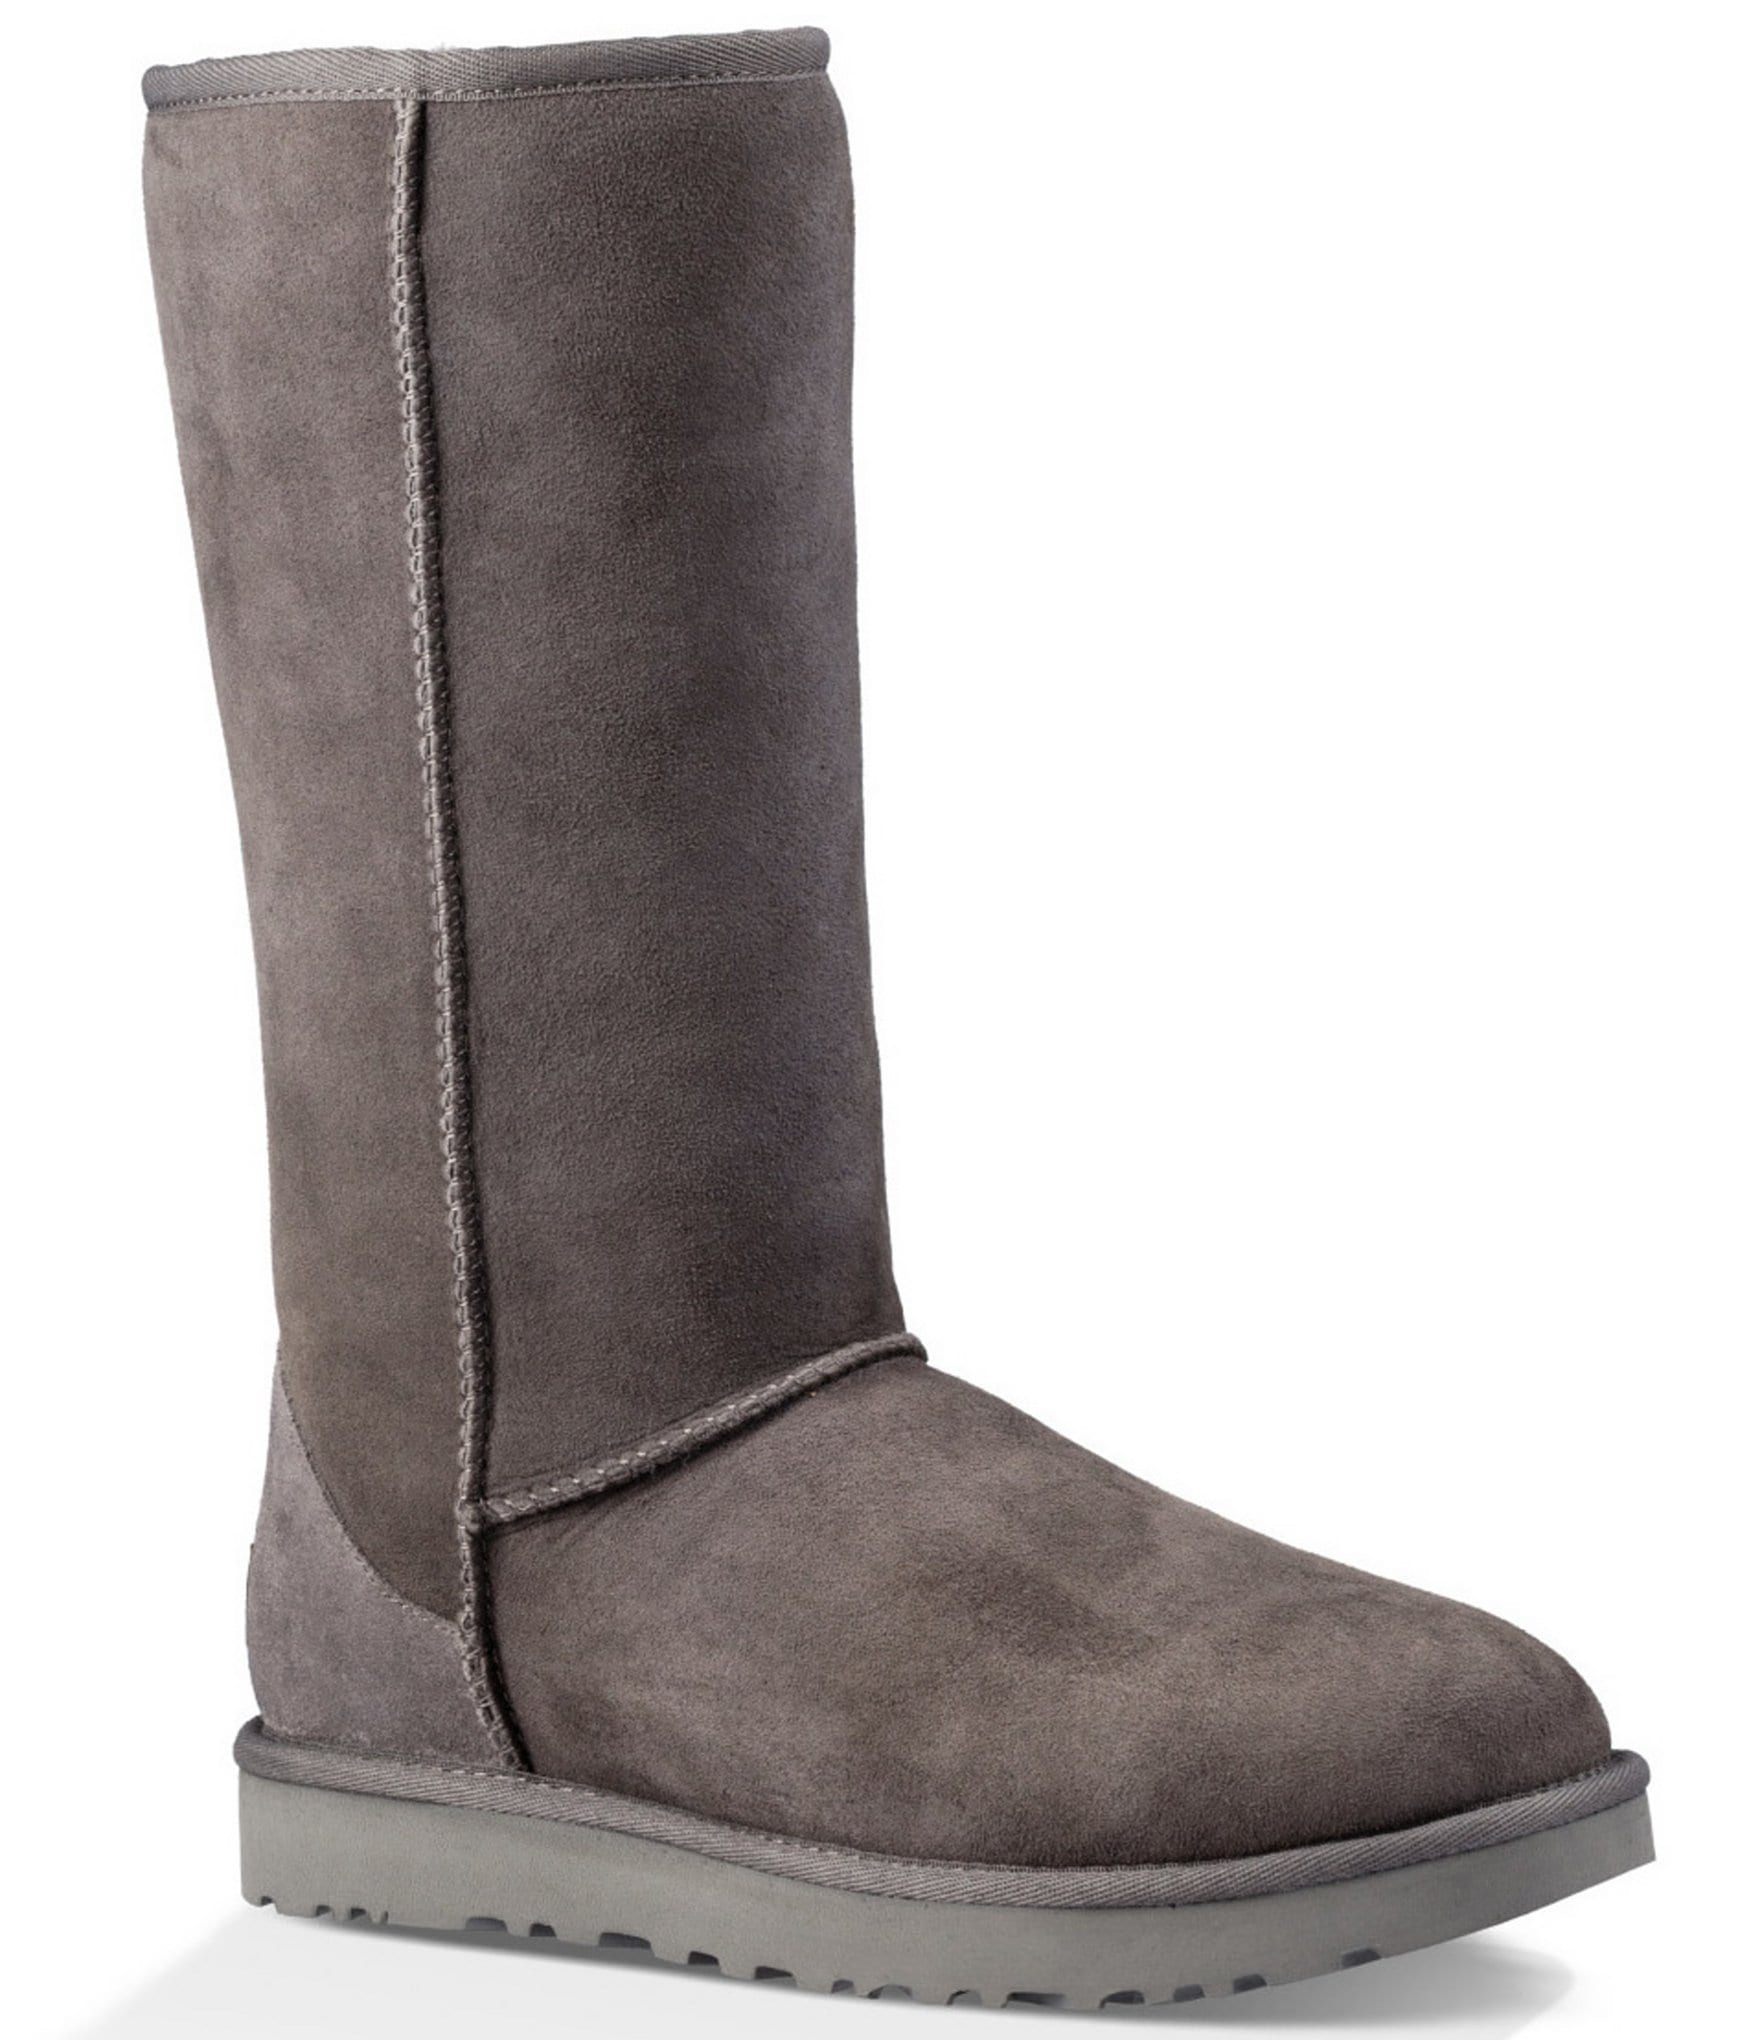 women's grey boots